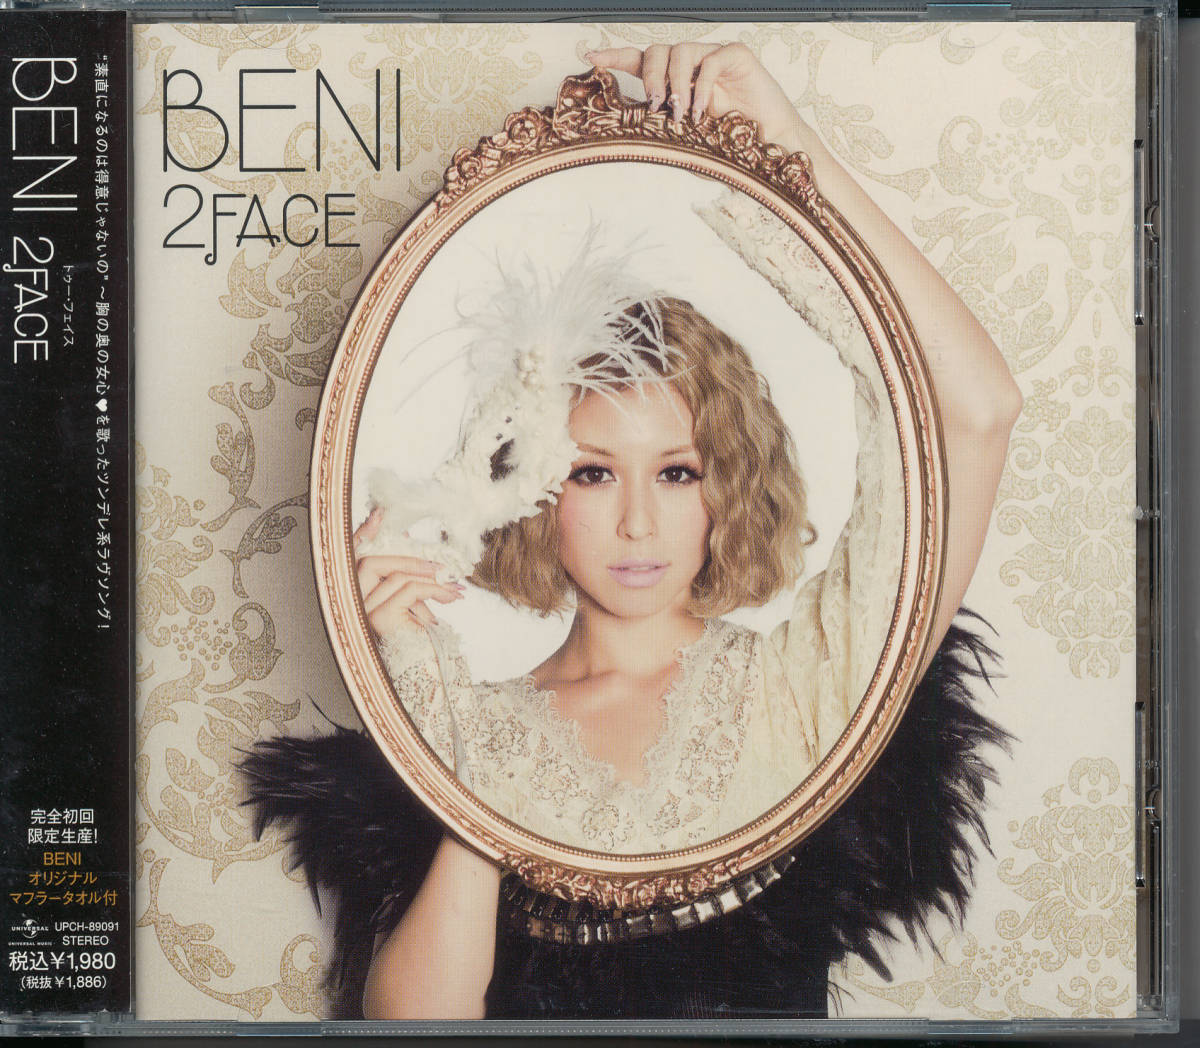 ヤフオク ベニbeni 2face 完全初回限定生産盤 オリジナル